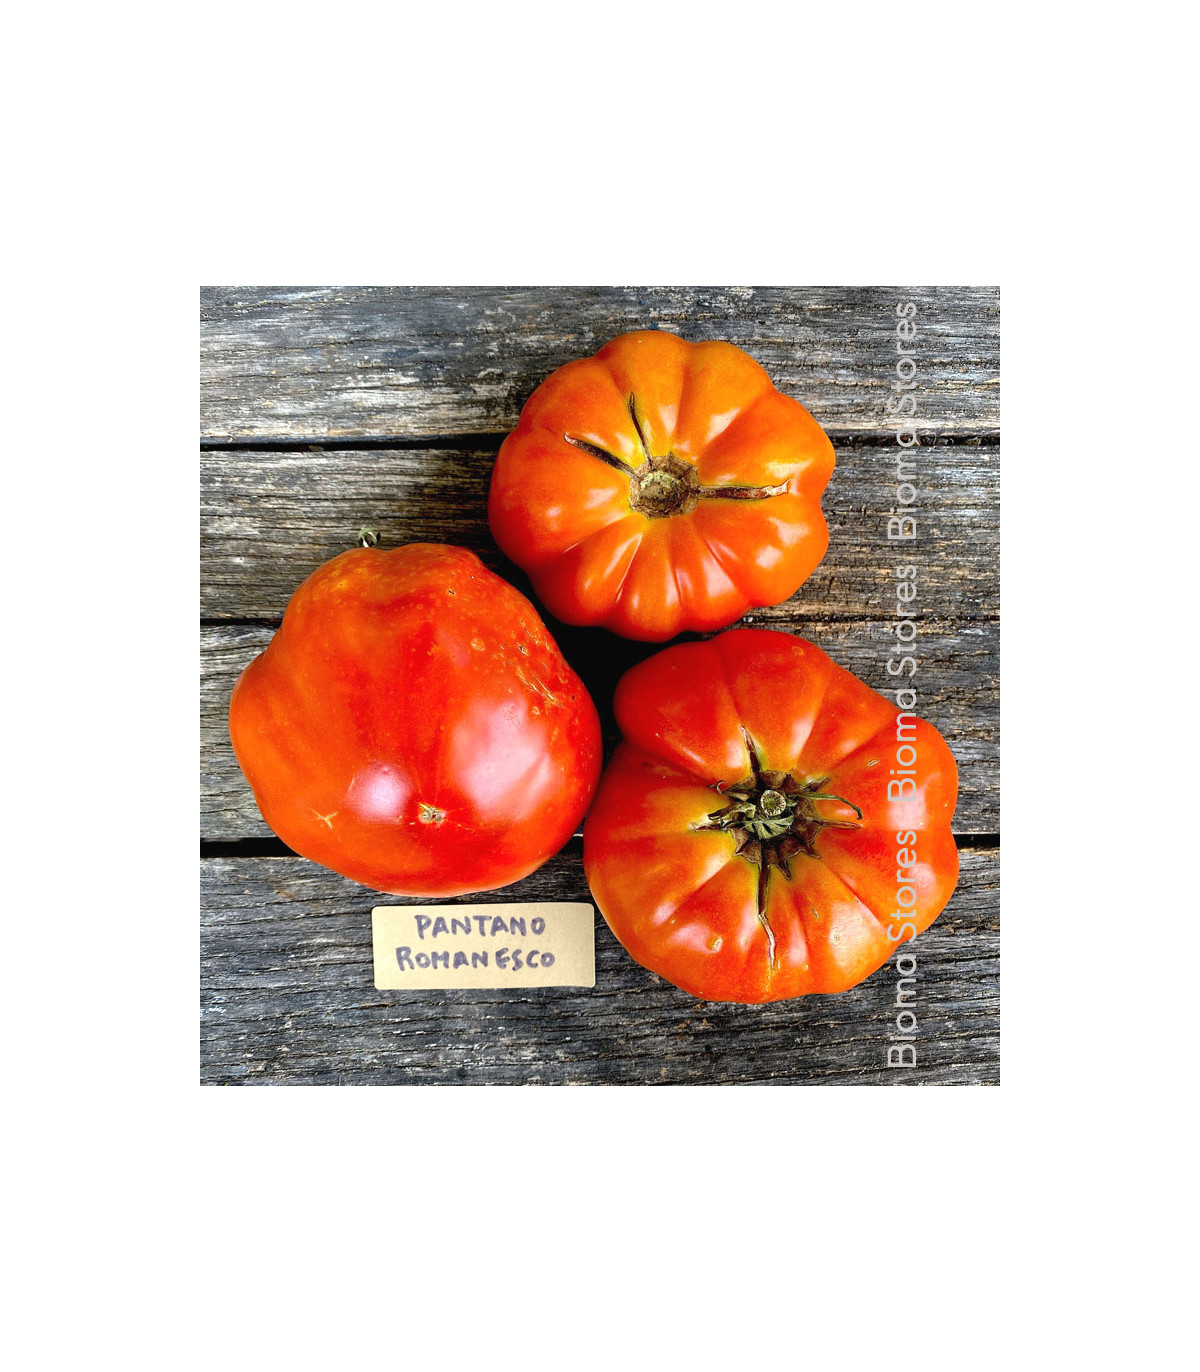 Paradajka Pantano Romanesco - Solanum lycopersicum - semená paradajky - 7 ks